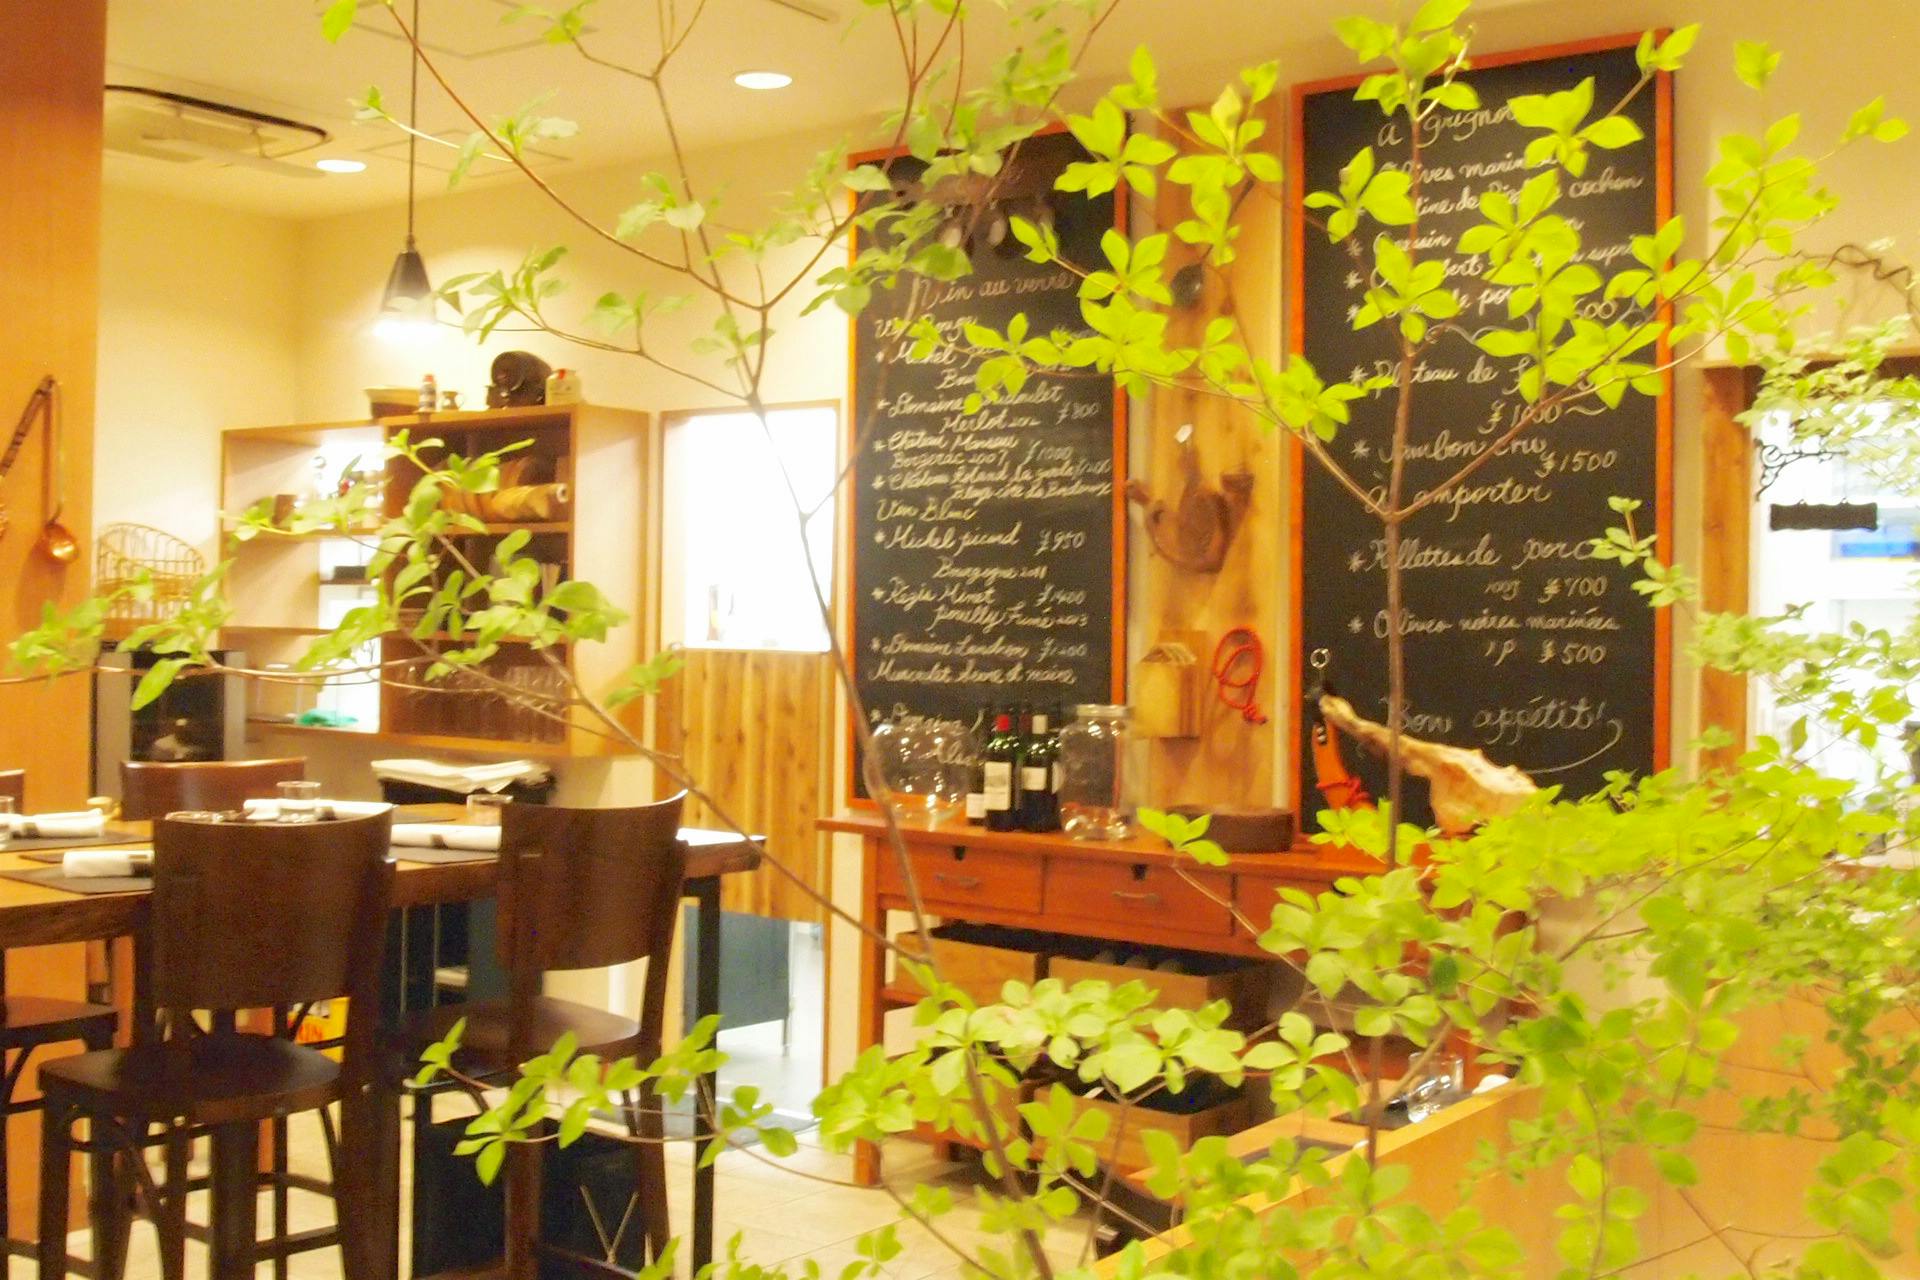 鎌倉駅ランチ 肉が食べれるおしゃれなレストラン16選 Okaimonoモール レストラン